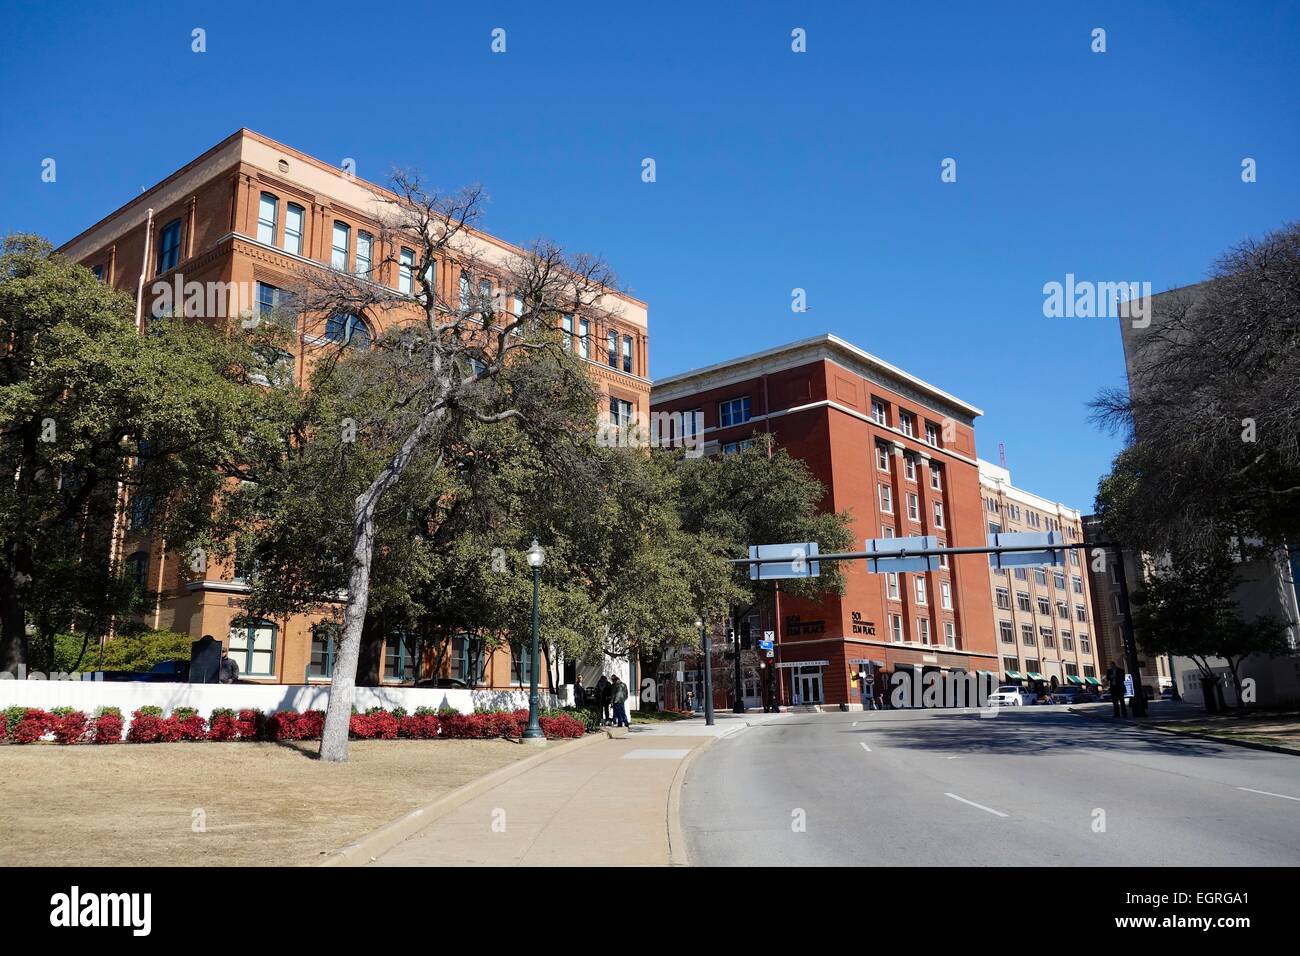 Dealey Plaza, Dallas Texas, du site d'assassinat de JFK. Le Texas School Book Depository Building à gauche. Banque D'Images